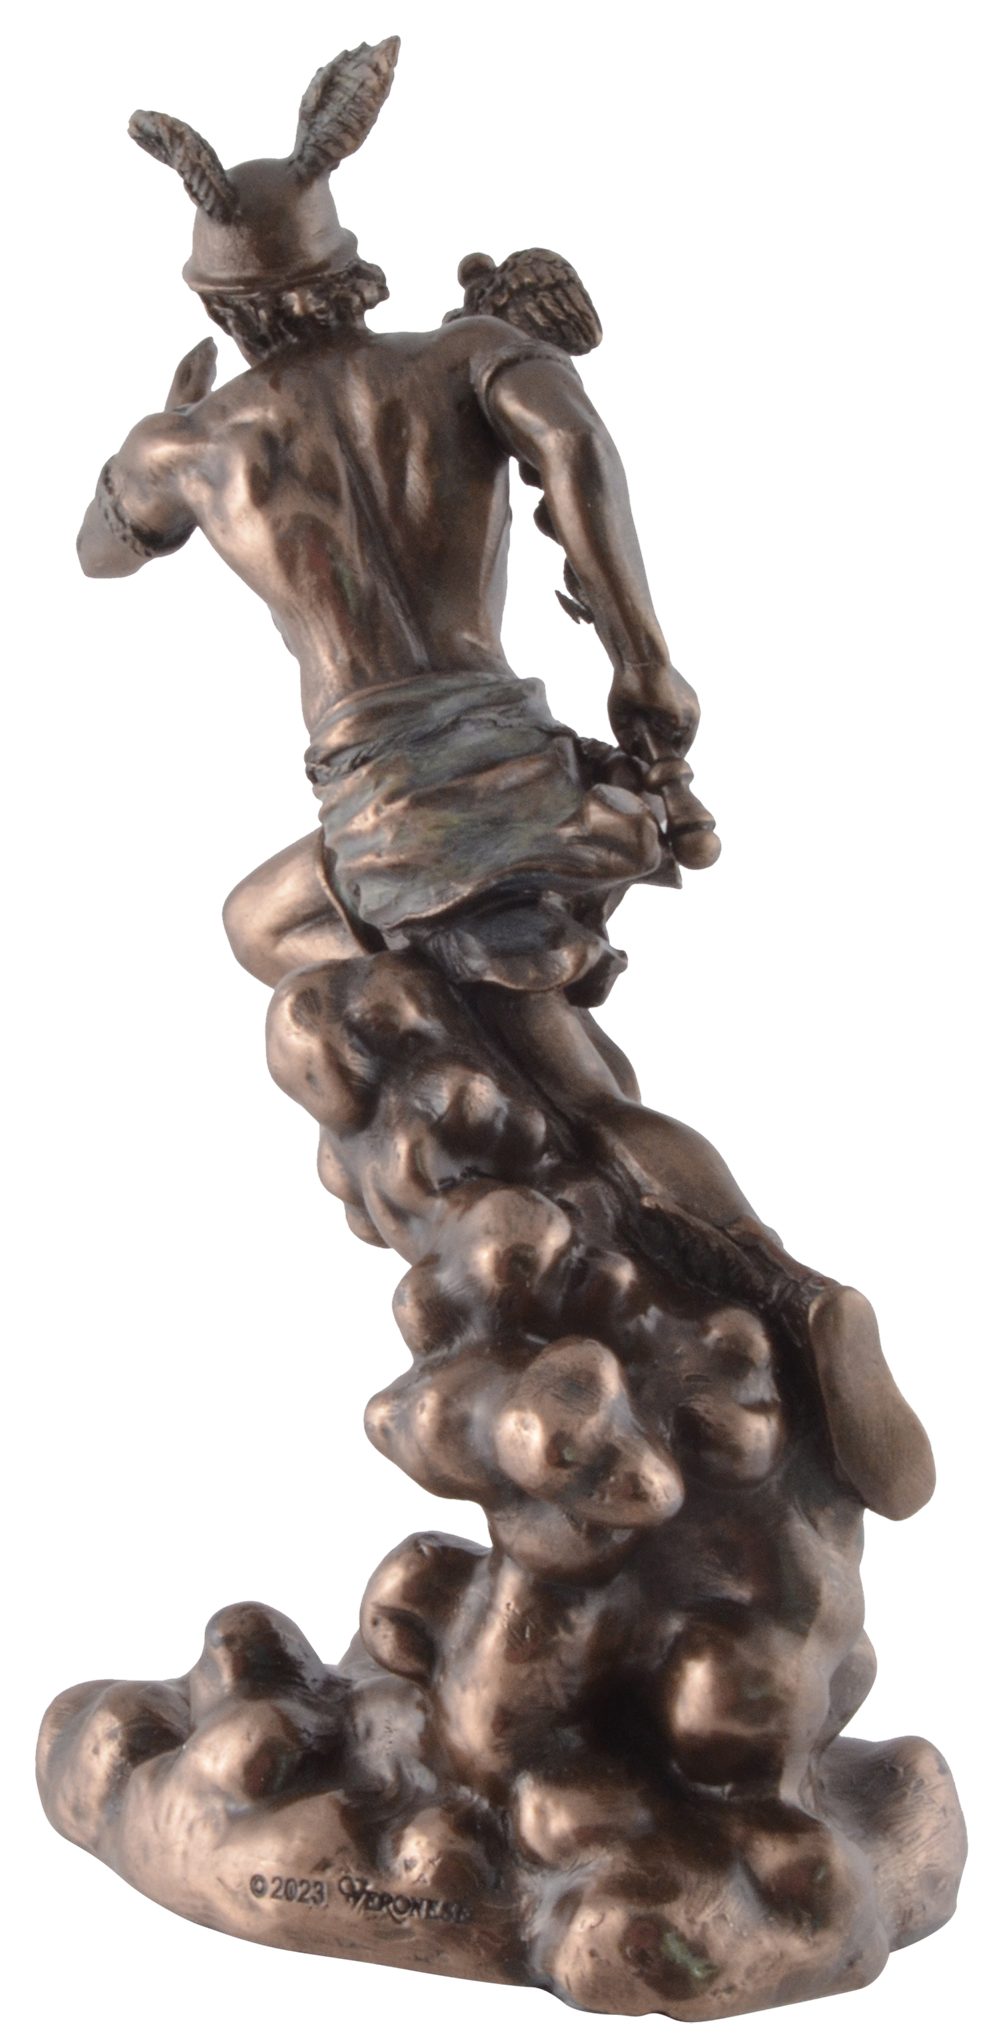 Vogler direct Gmbh Dekofigur ca. L/B/H bronziert, cm Größe: 11x6x17 Griechischer Veronesedesign, Götterbote Hermes, coloriert